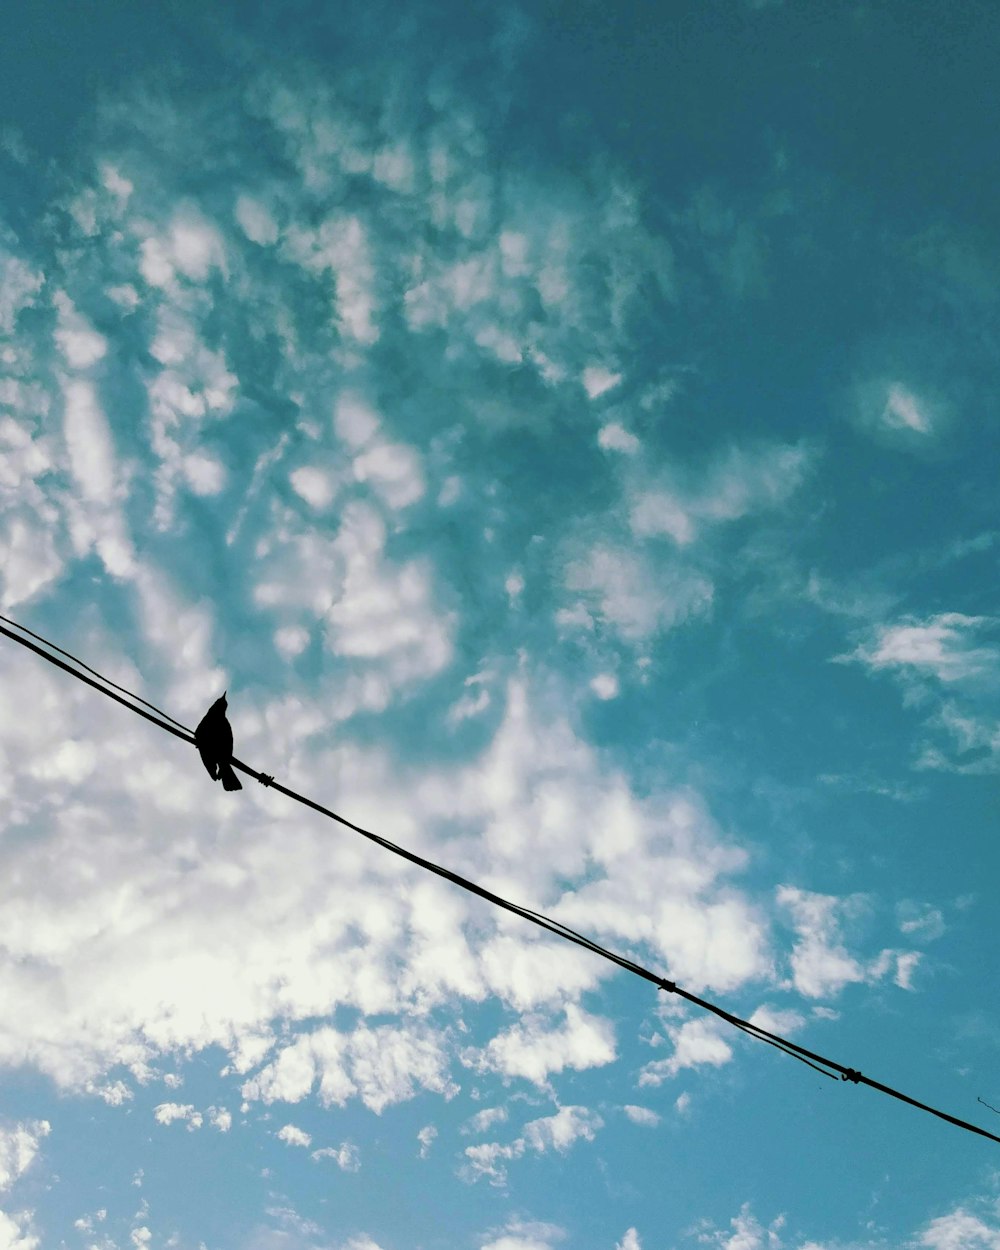 black bird on black wire under blue sky during daytime